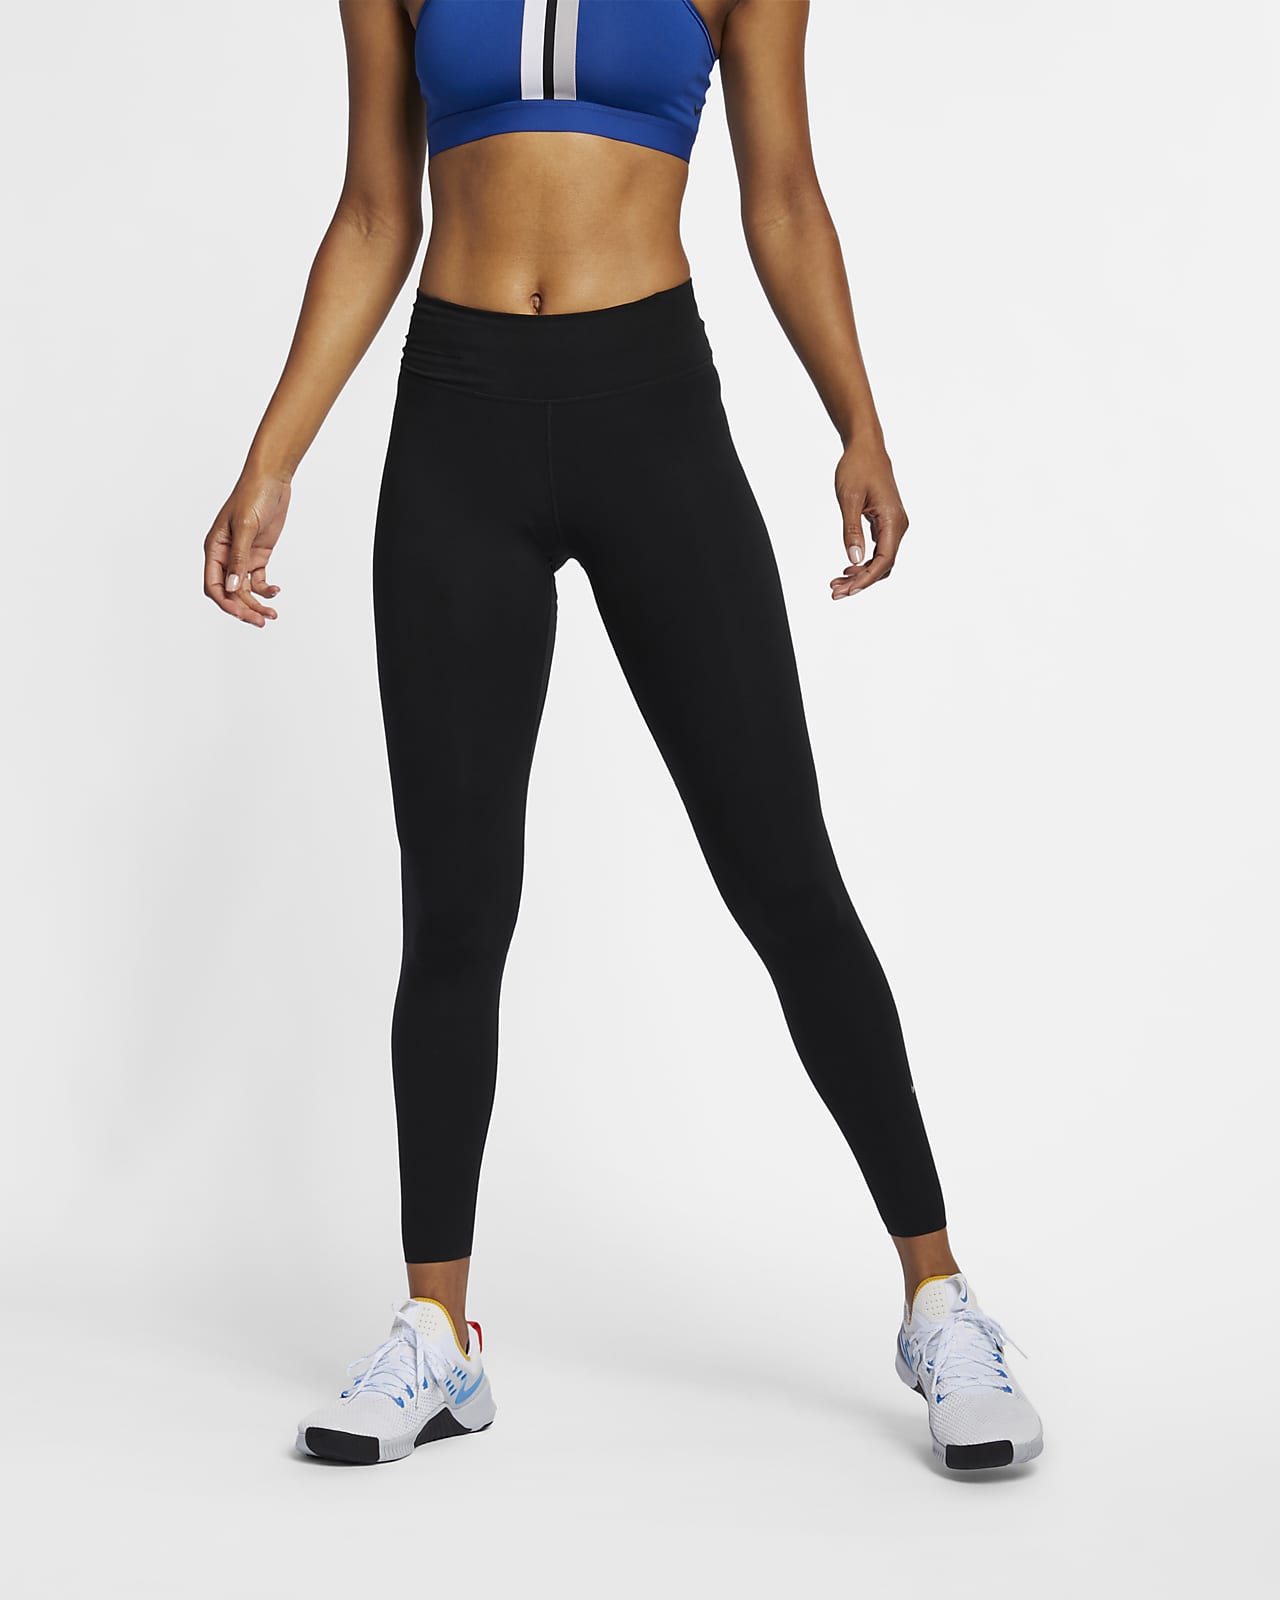 Γυναικείο κολάν μεσαίου ύψους με τσέπες Nike One Luxe